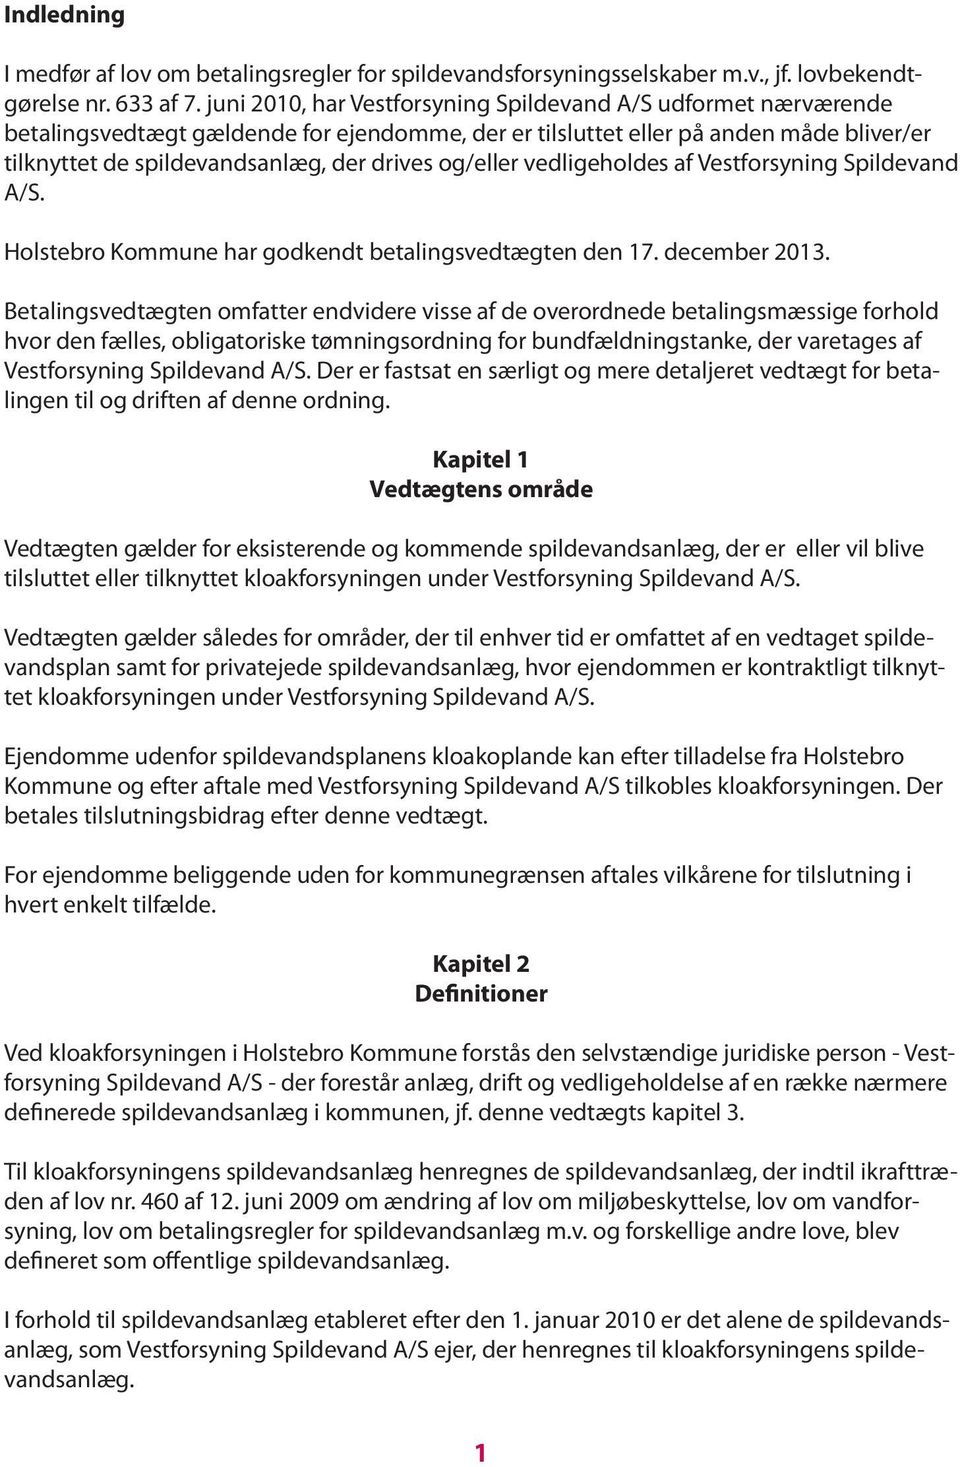 og/eller vedligeholdes af Vestforsyning Spildevand A/S. Holstebro Kommune har godkendt betalingsvedtægten den 17. december 2013.